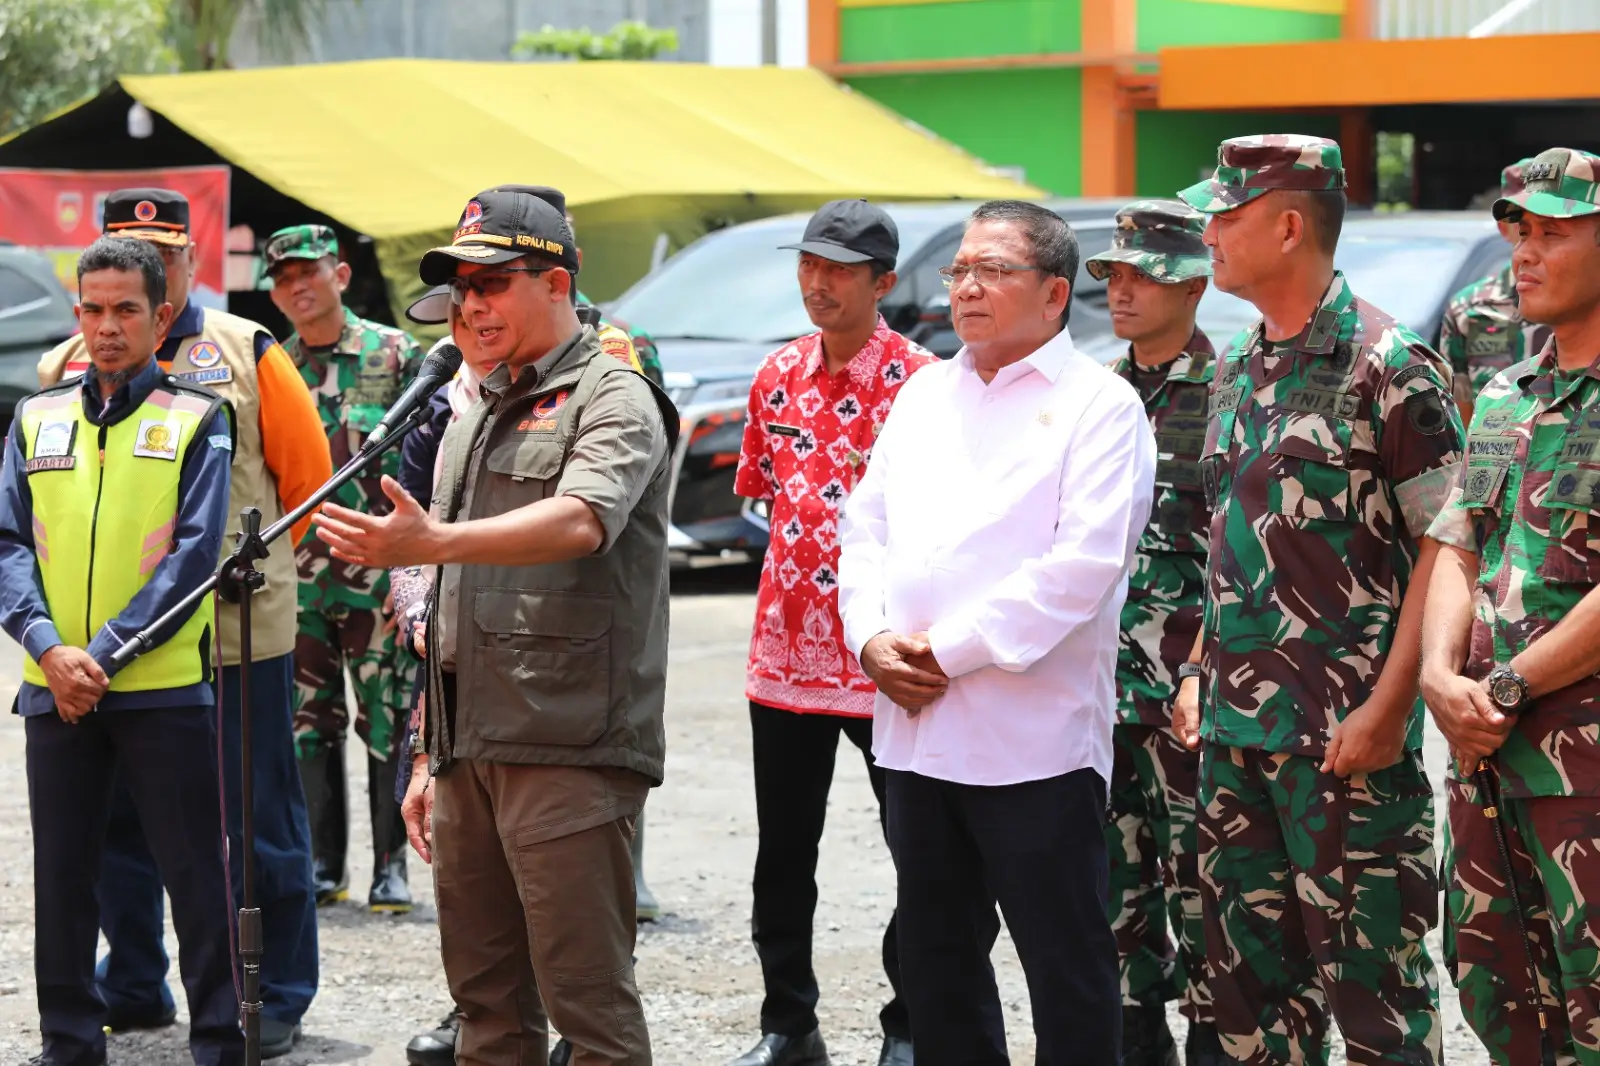 Kepala Badan Nasional Penanggulangan Bencana (BNPB) Letjen TNI Suharyanto saat berada di lokasi pengungsian SMK Ganesha untuk berdiskusi dengan warga terdampak banjir di Kabupaten Demak, Jawa Tengah pada Rabu (21/2).